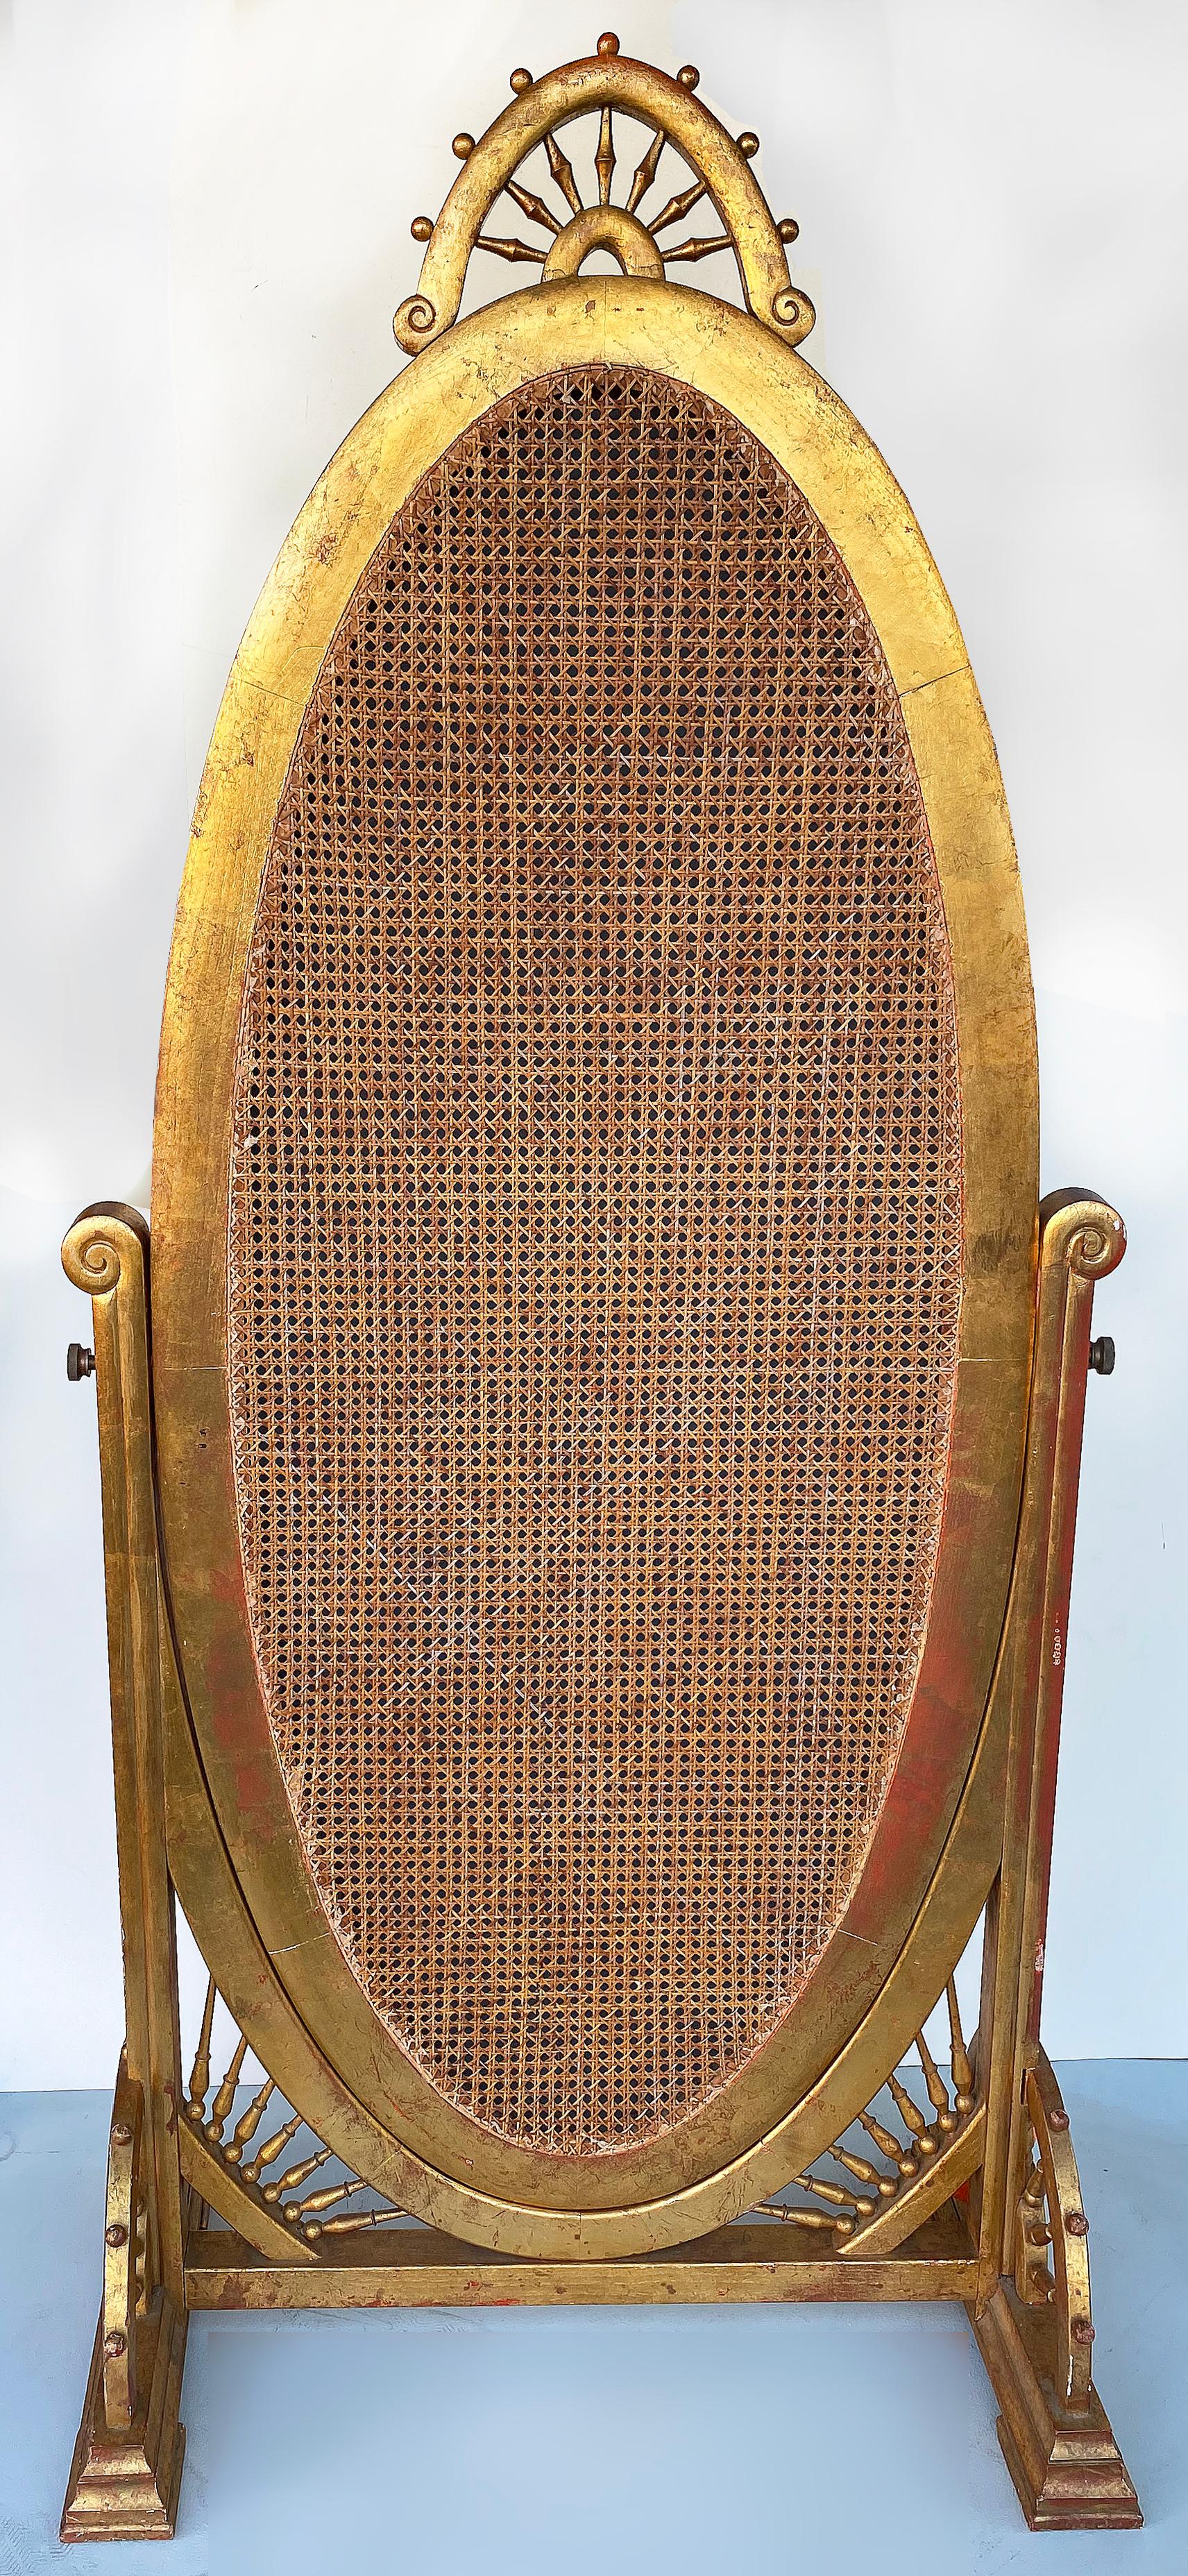 Viktorianischer vergoldeter Chevalspiegel aus dem 19. Jahrhundert auf Ständer mit Rohrrücken

Angeboten wird ein spätes 19. Jahrhundert viktorianischen vergoldetem Holz Cheval Spiegel auf Stand. Der Rahmen aus vergoldetem Holz enthält gedrechselte